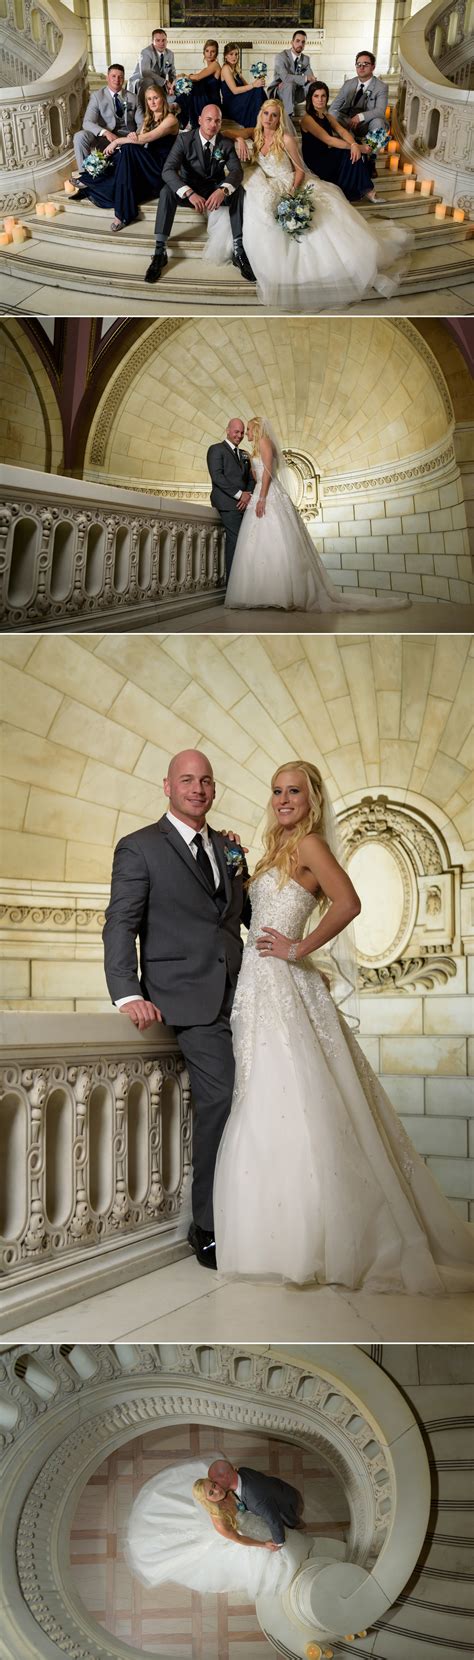 Krystal And Anthony Old Courthouse Cleveland Wedding Akron Wedding Photographer David Corey